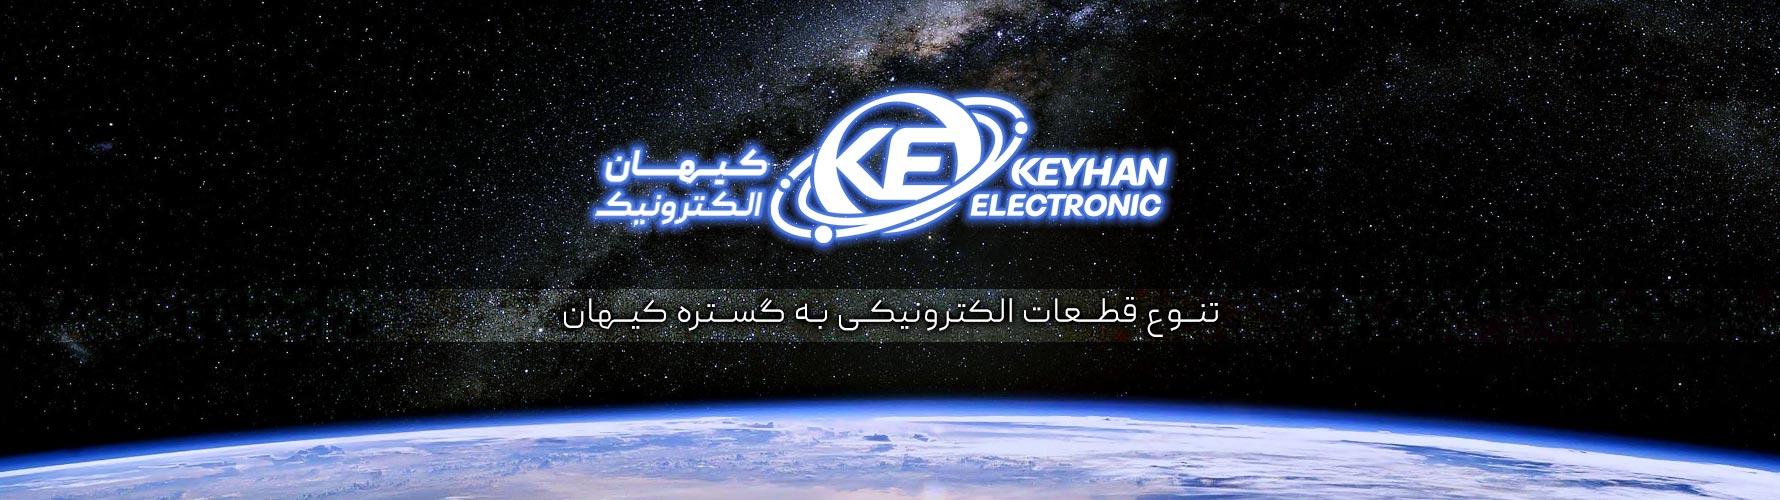 افتتاحیه وبسایت کیهان الکترونیک - کیهان الکترونیک